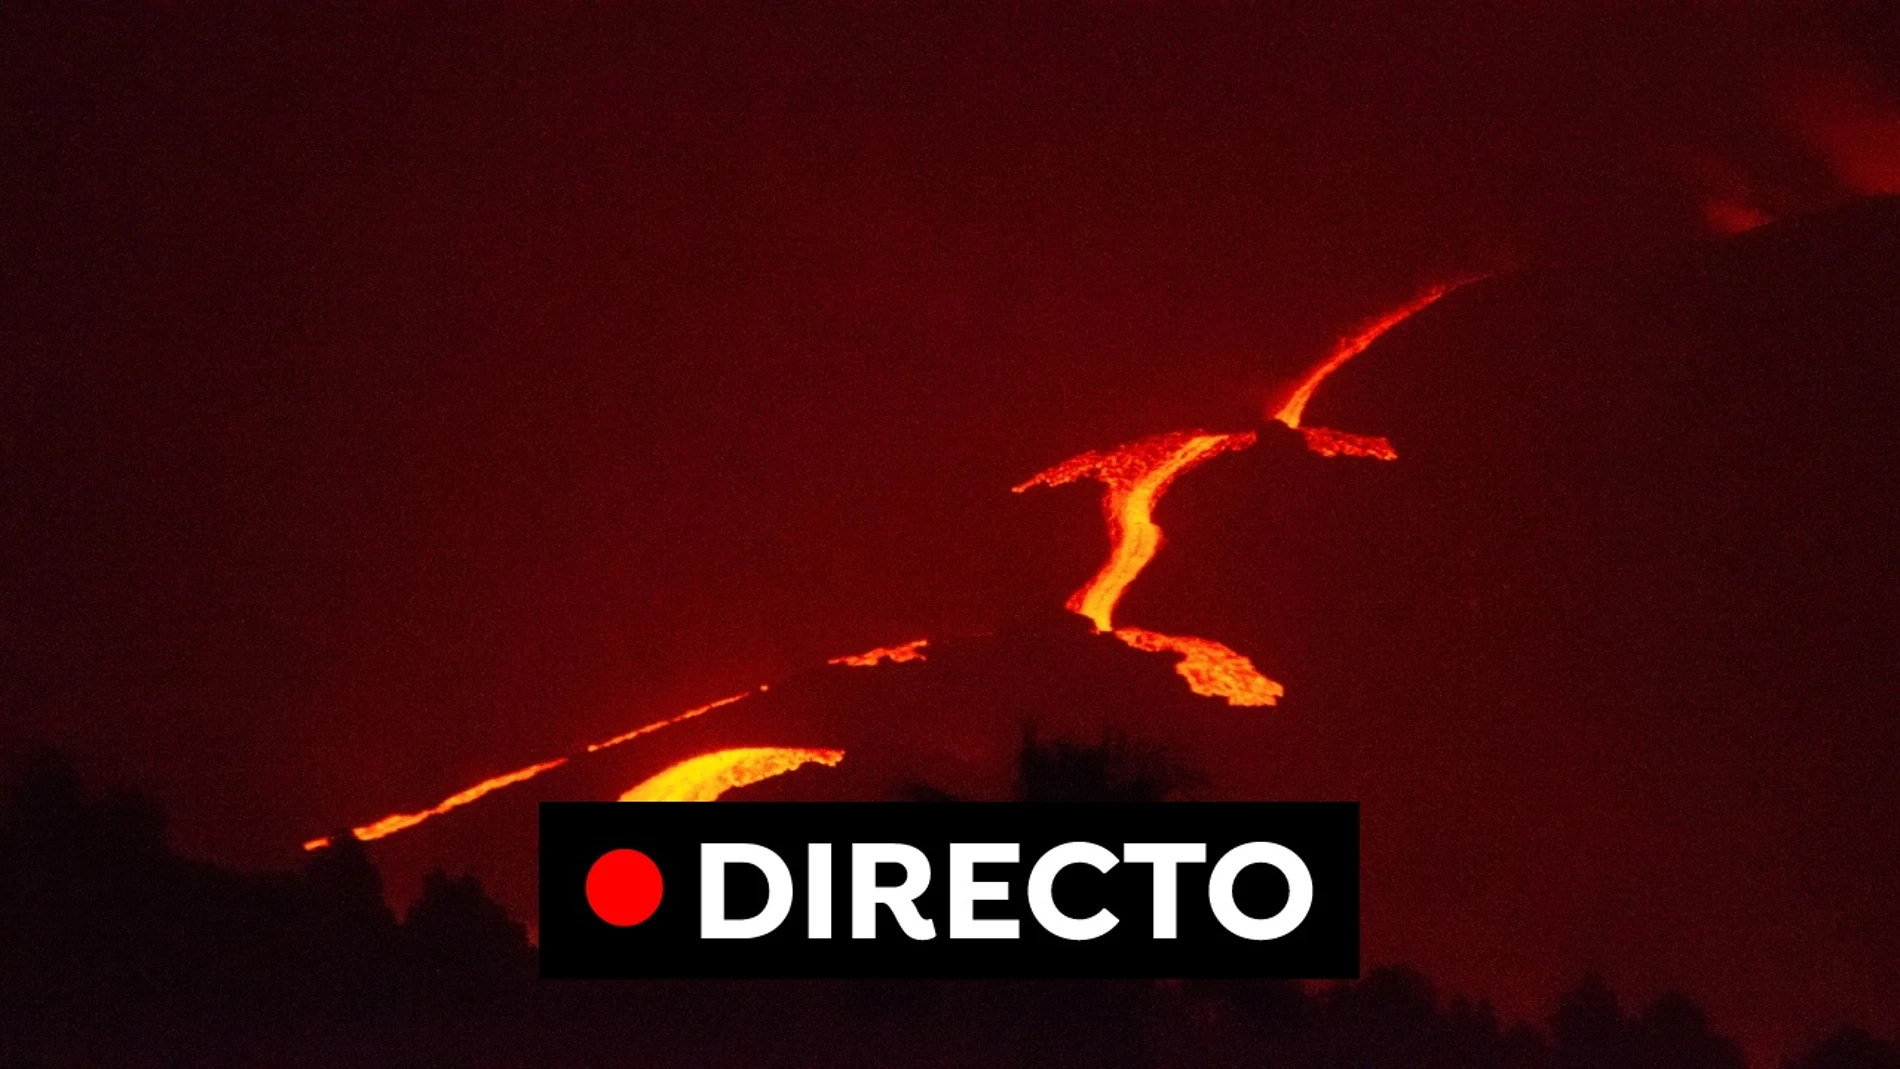 Última hora de la erupción en Cumbre Vieja, imágenes y el recorrido de la lava hoy, en directo